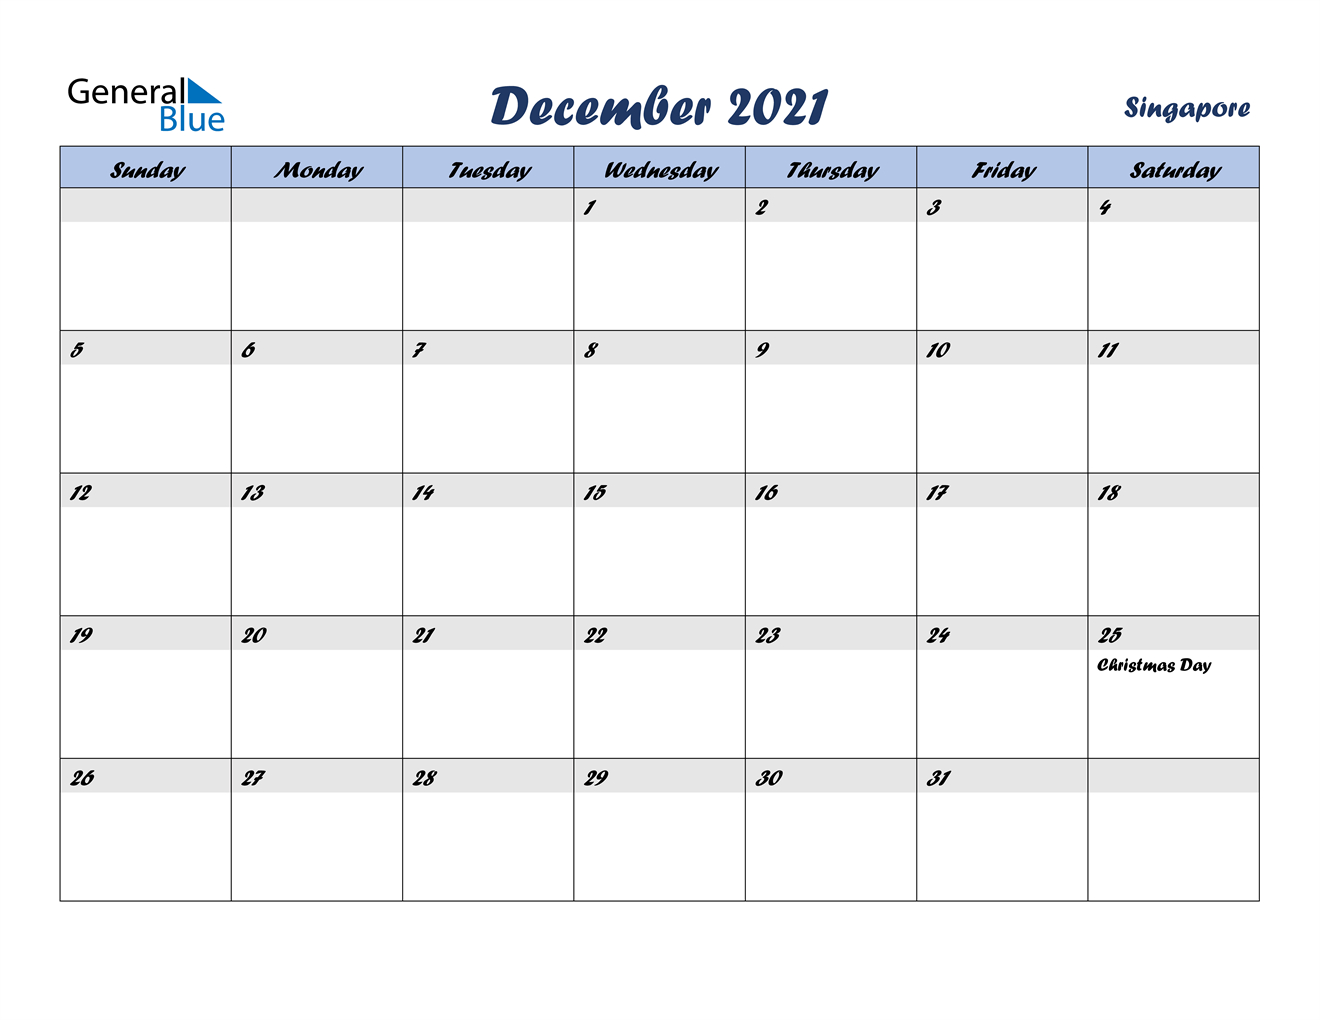 December 2021 Calendar - Singapore